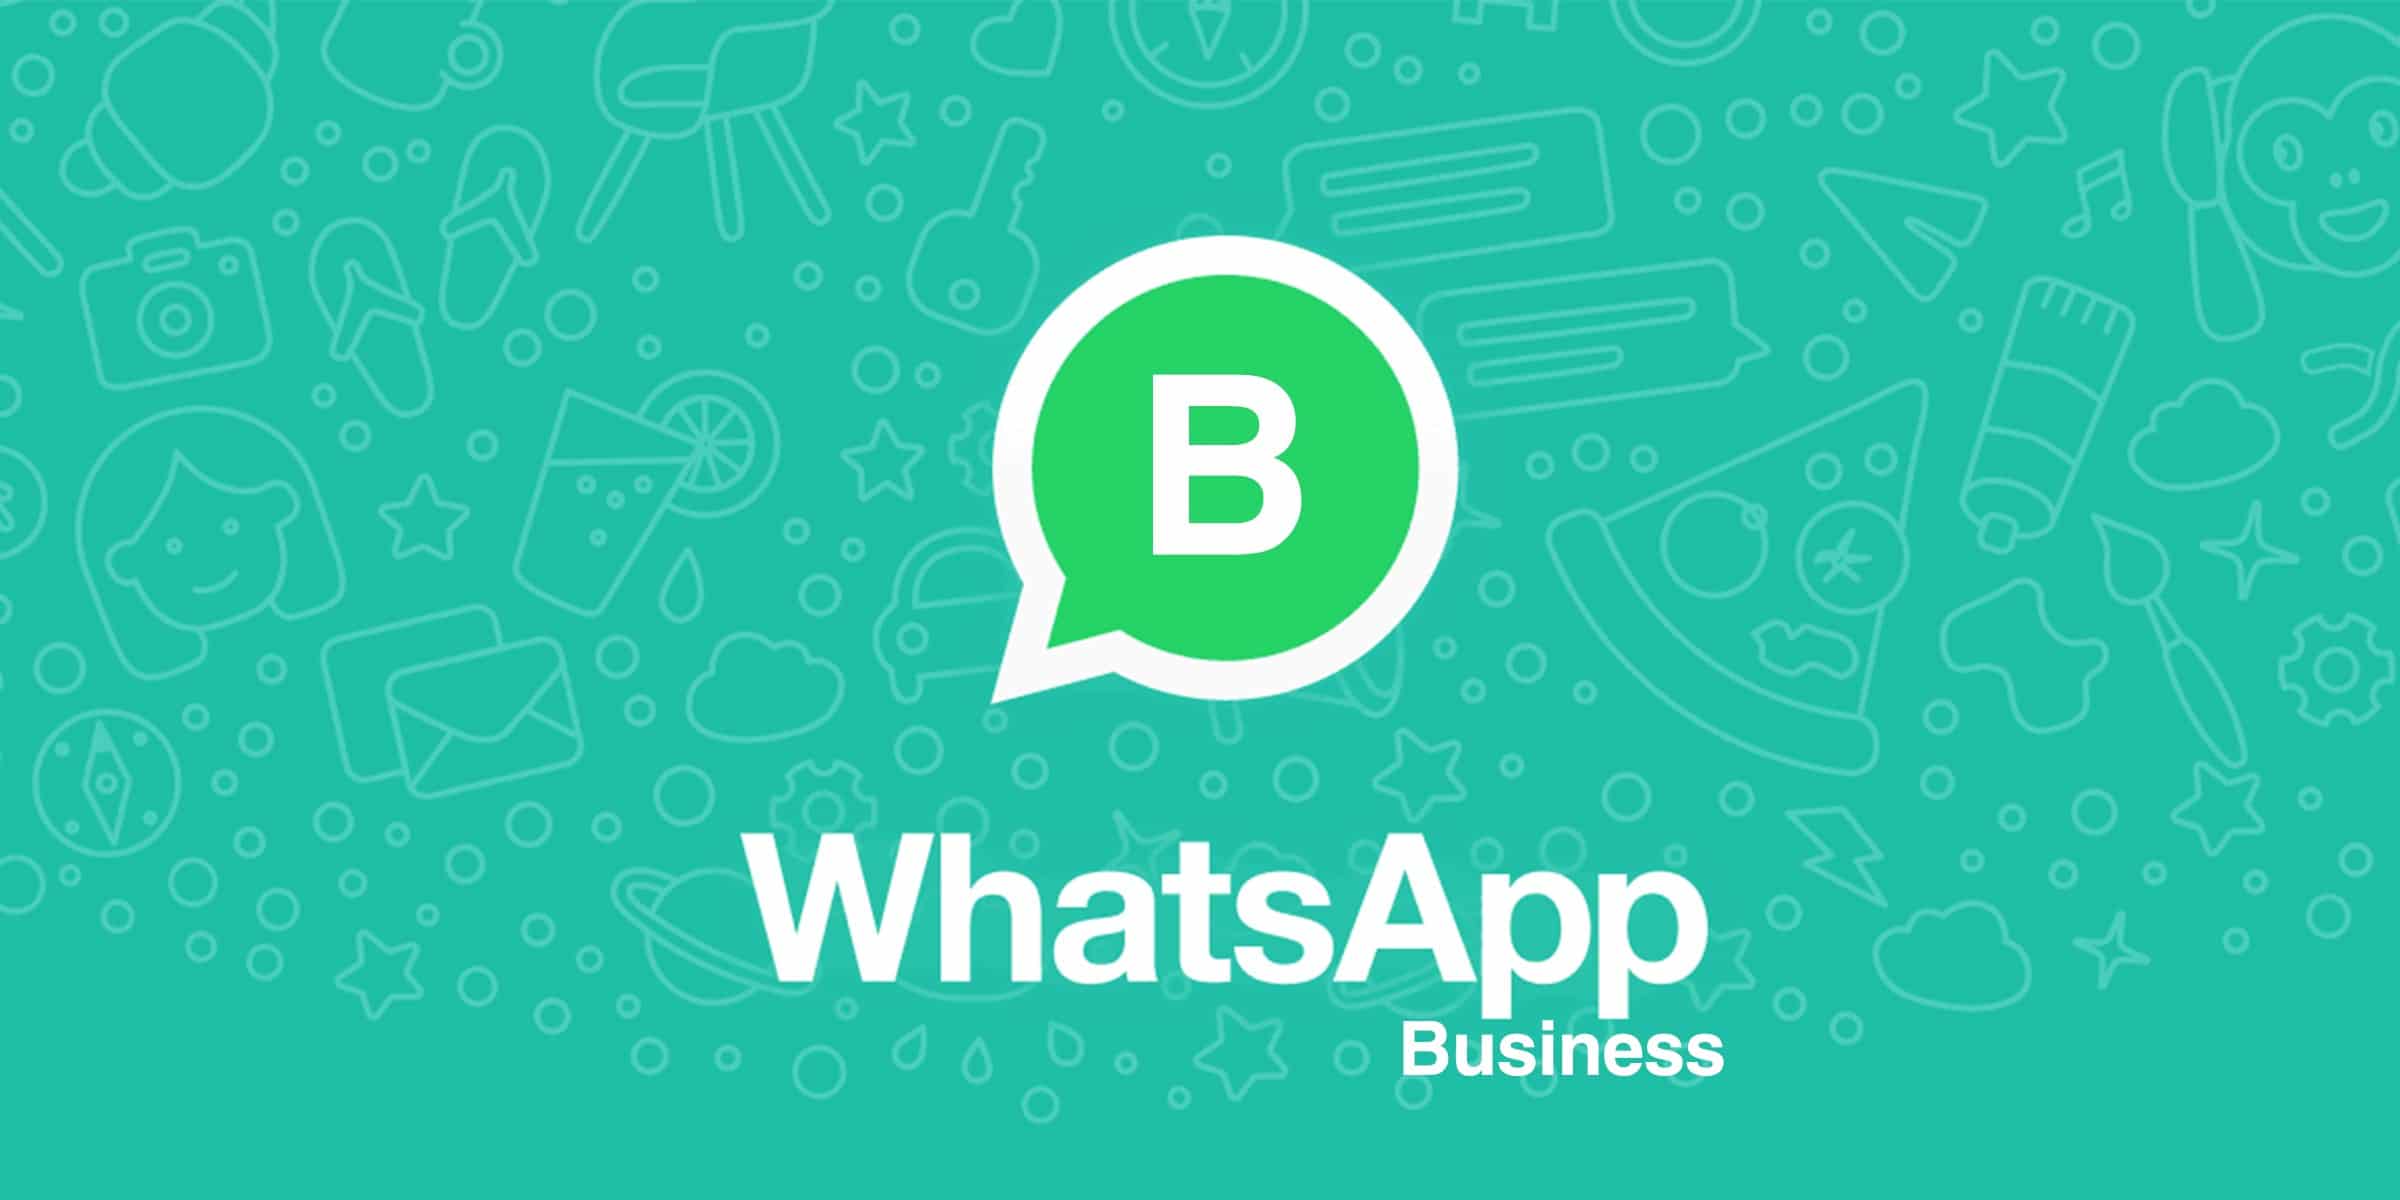 واتساب للاعمال WhatsApp Business